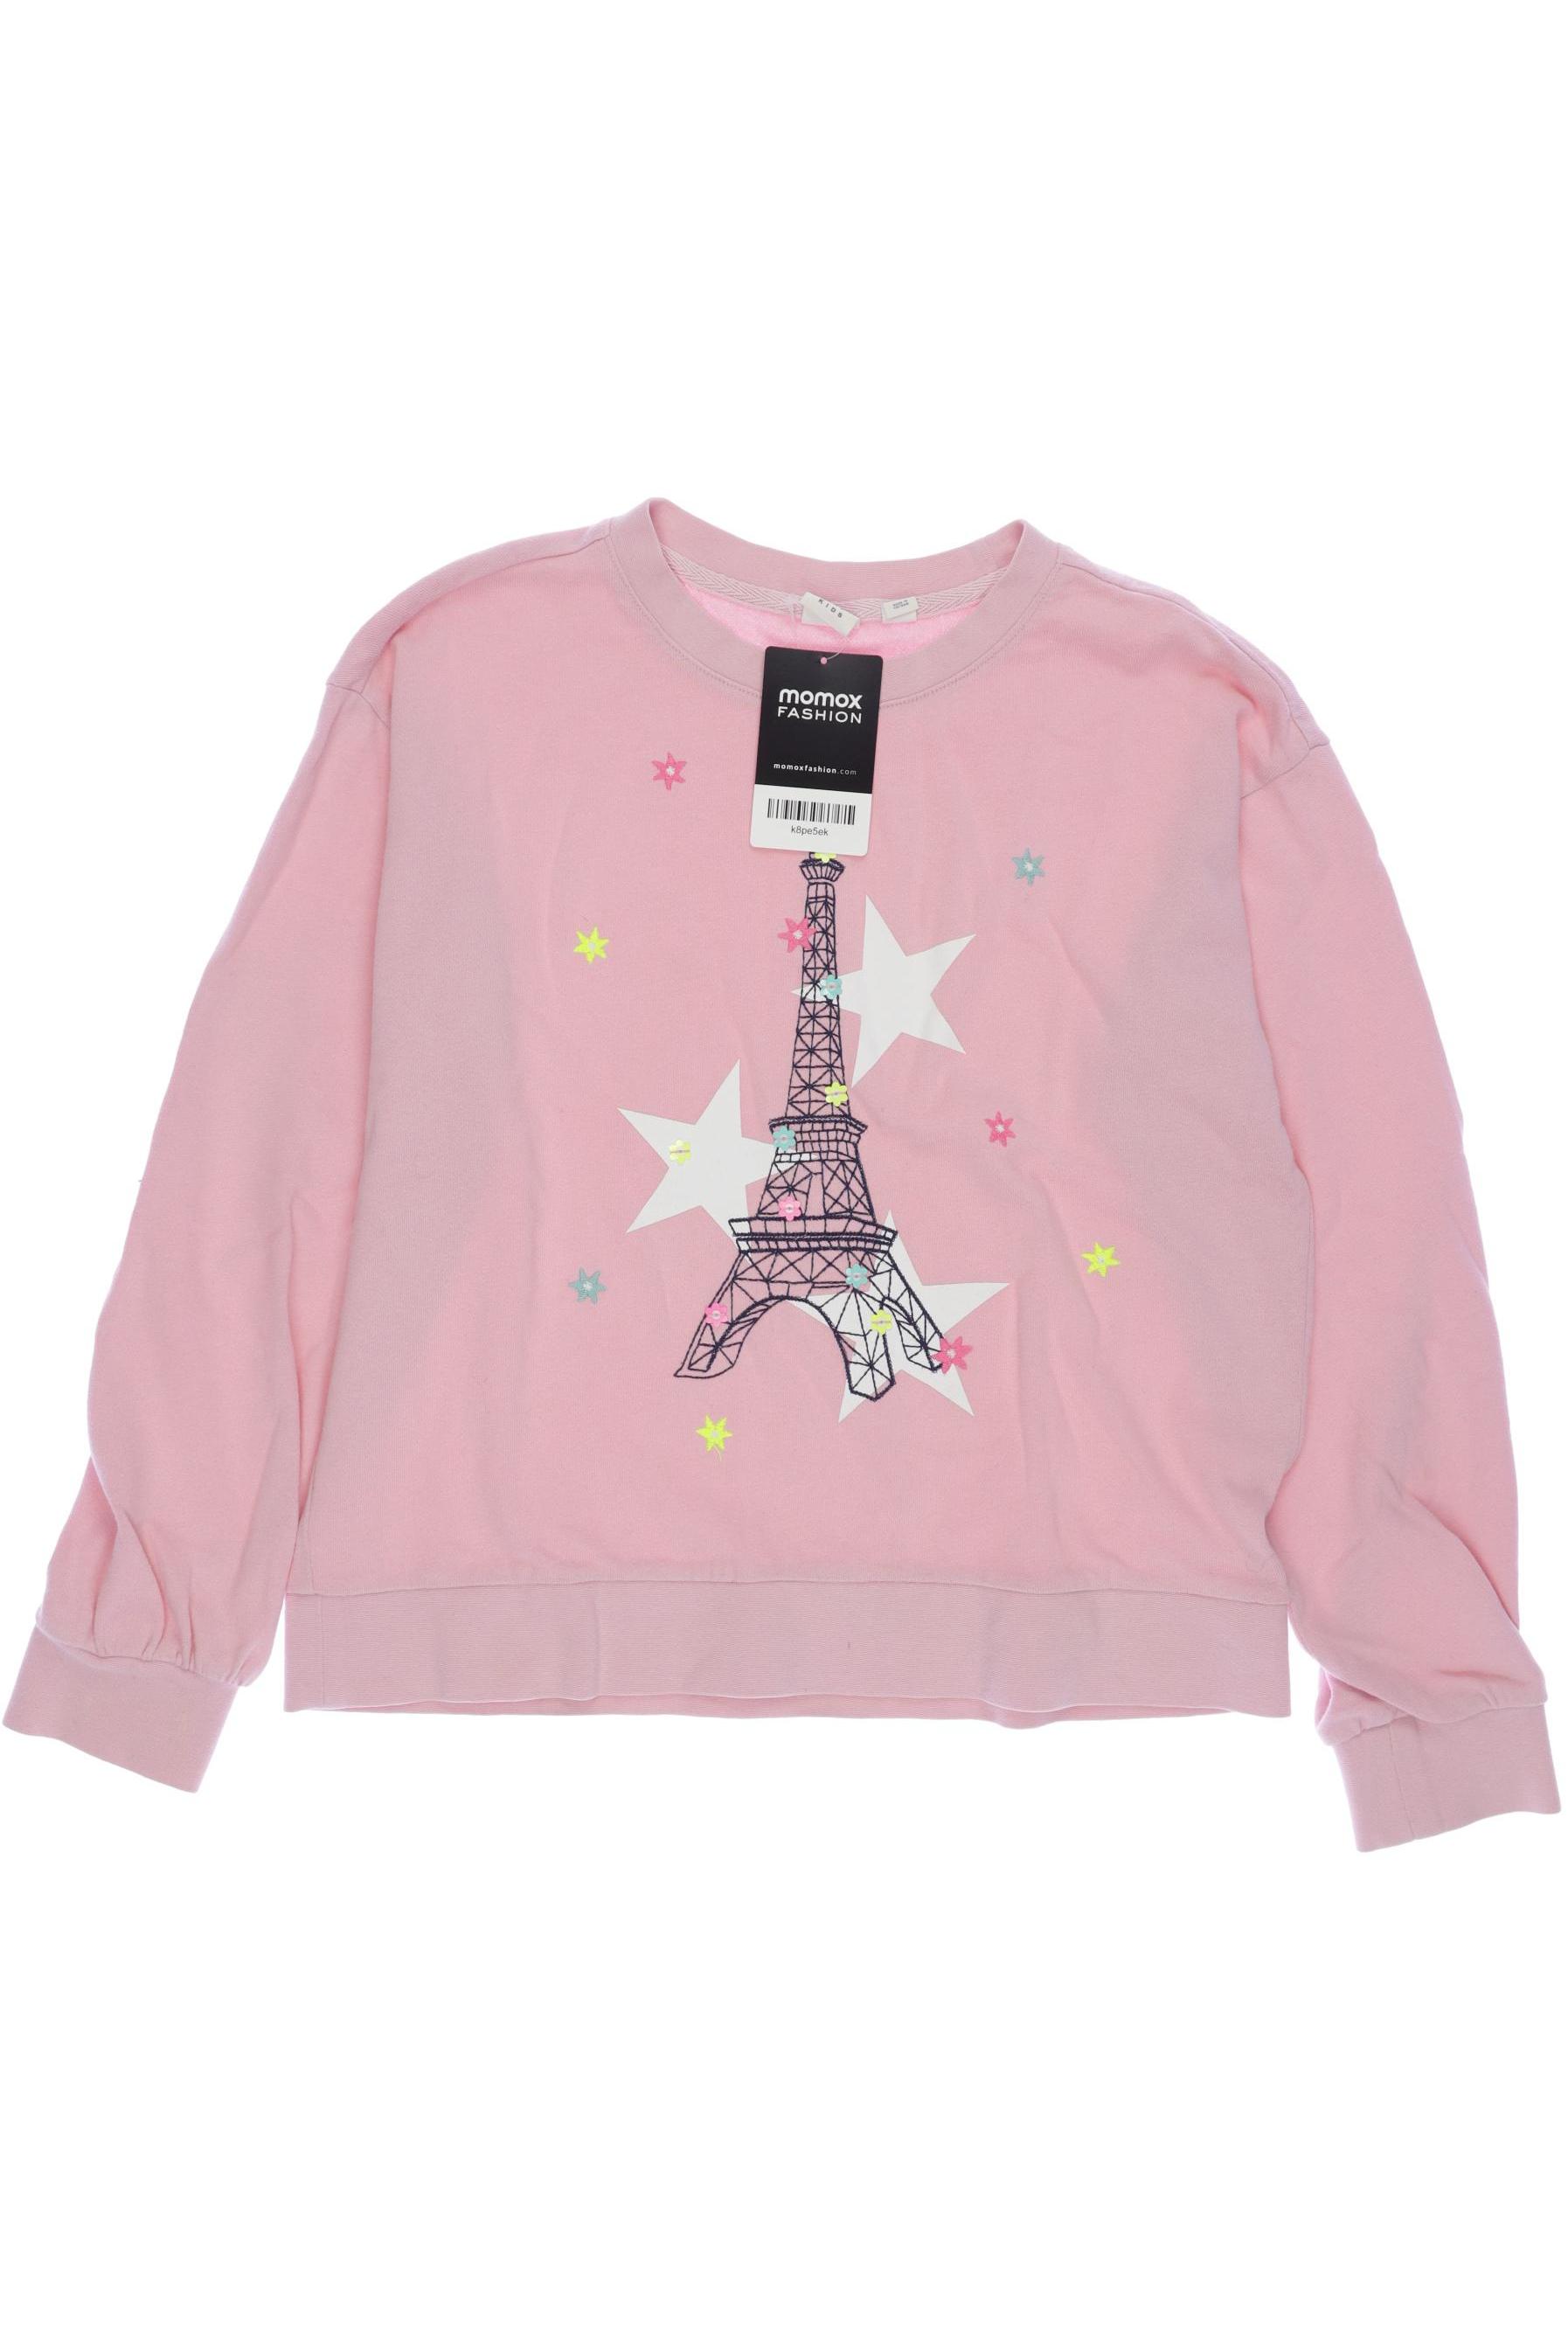 GAP Damen Hoodies & Sweater, pink, Gr. 158 von GAP